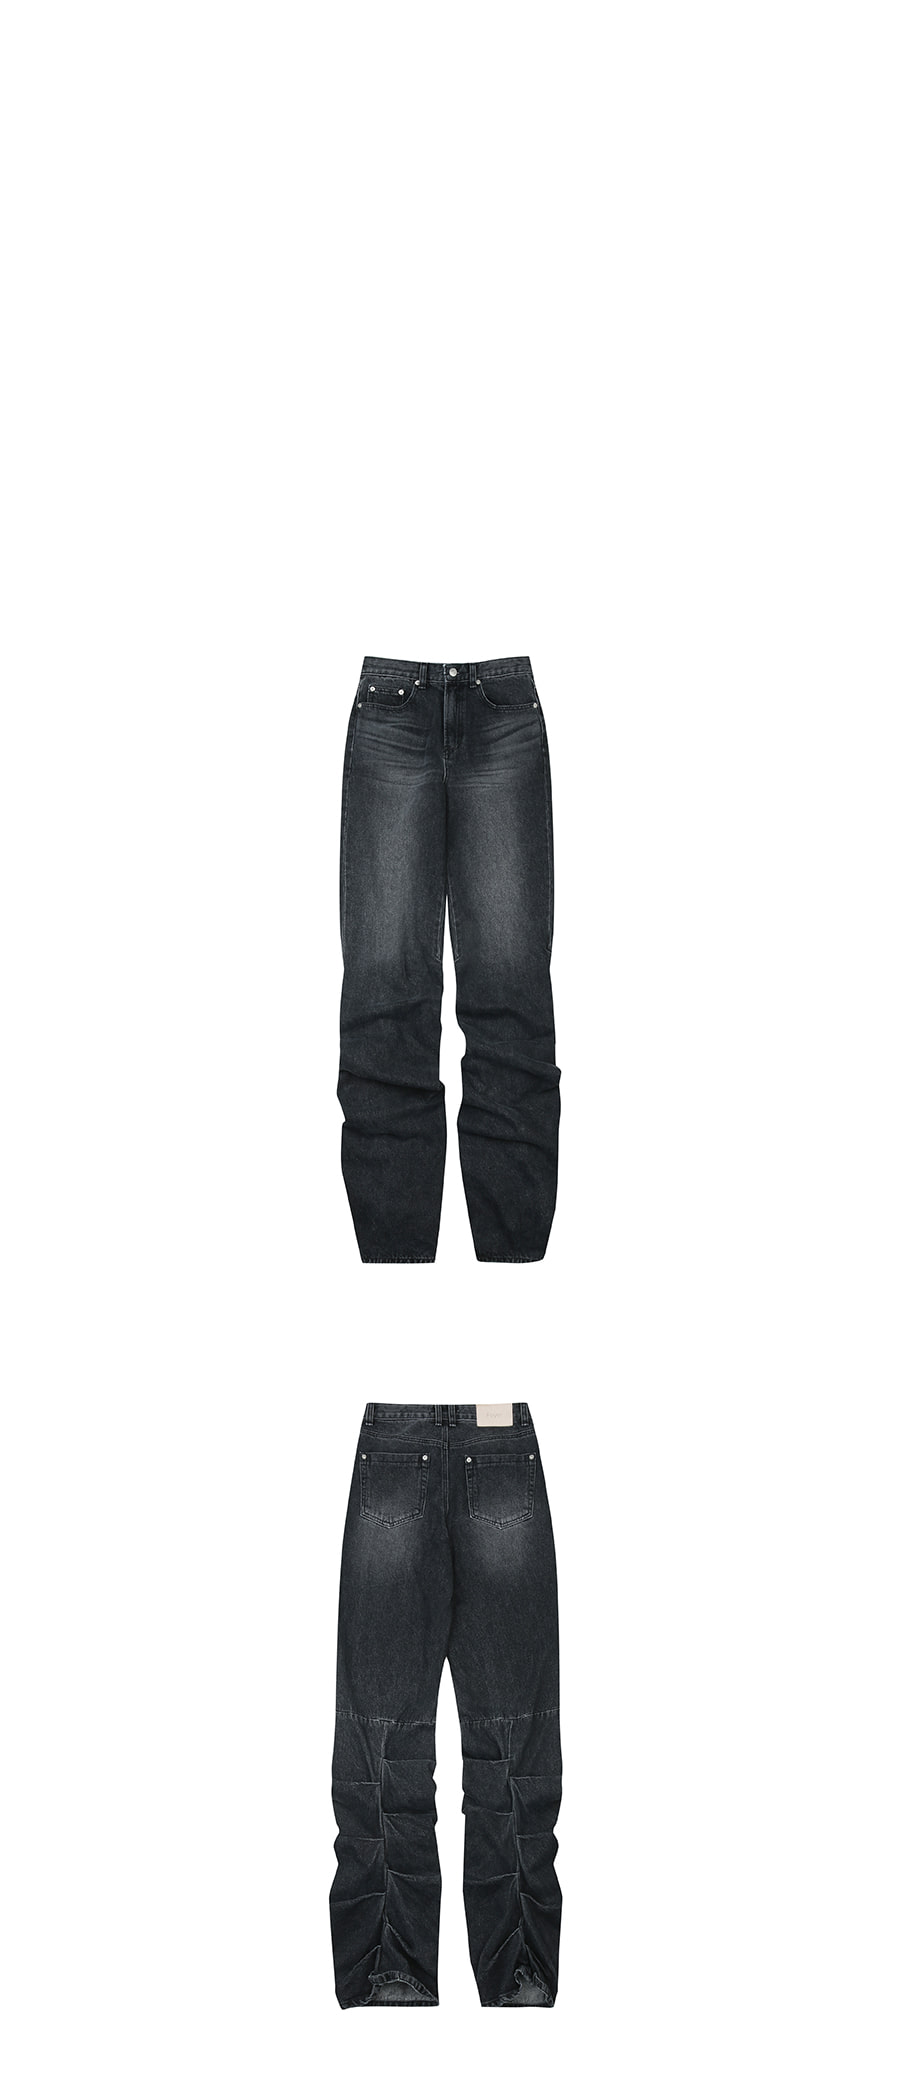 포이어(FOYER) Pintuck Straight Jeans Black